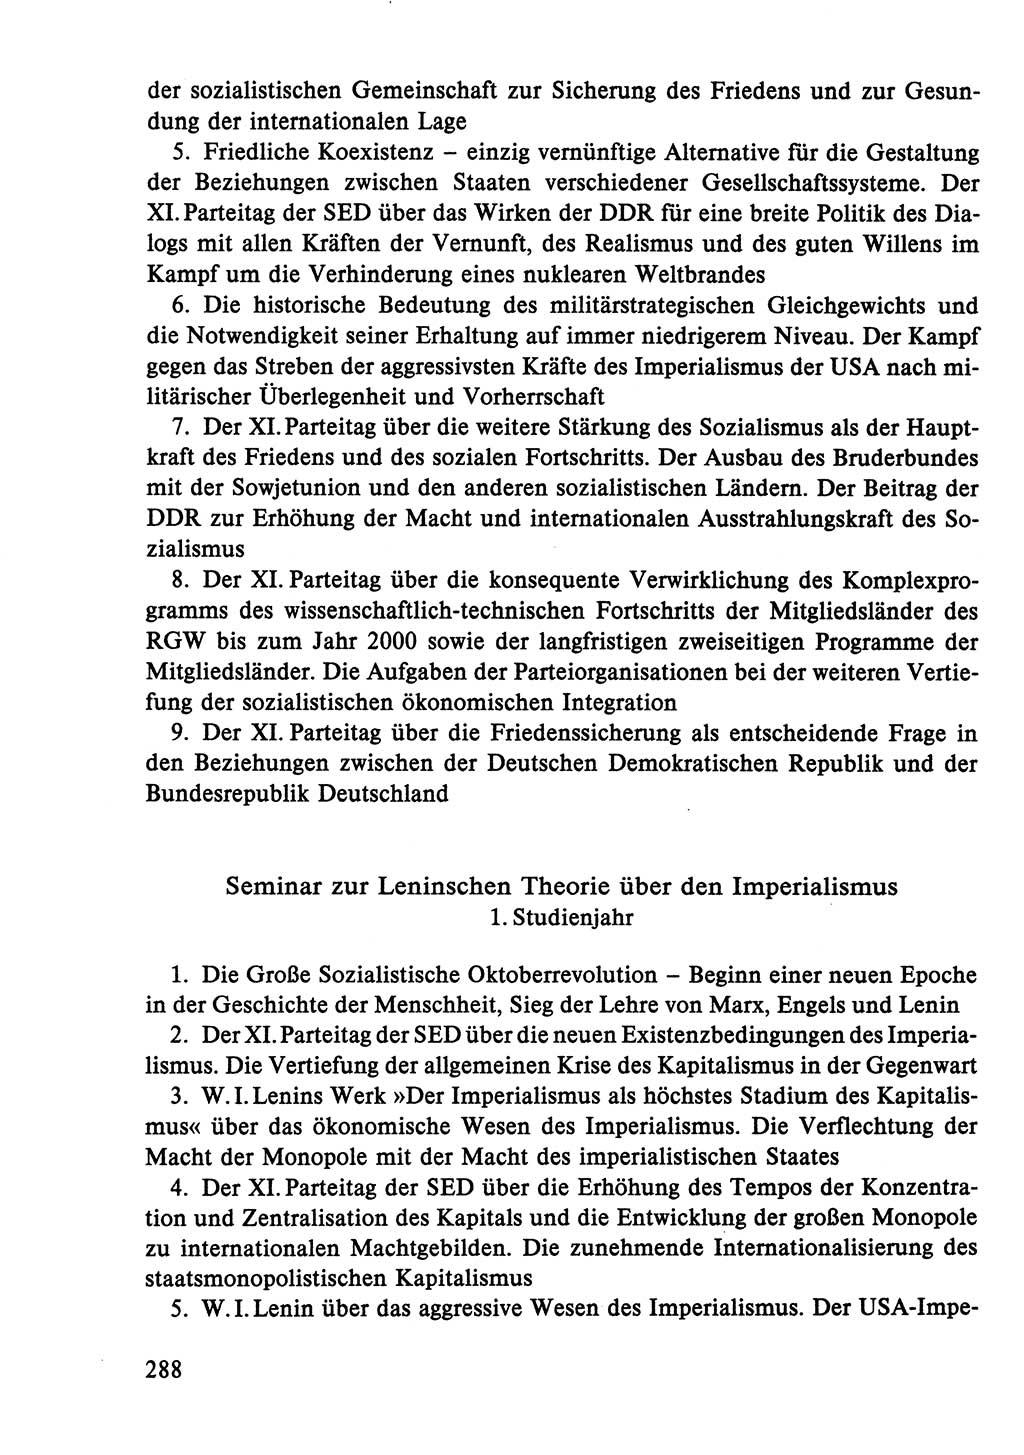 Dokumente der Sozialistischen Einheitspartei Deutschlands (SED) [Deutsche Demokratische Republik (DDR)] 1986-1987, Seite 288 (Dok. SED DDR 1986-1987, S. 288)